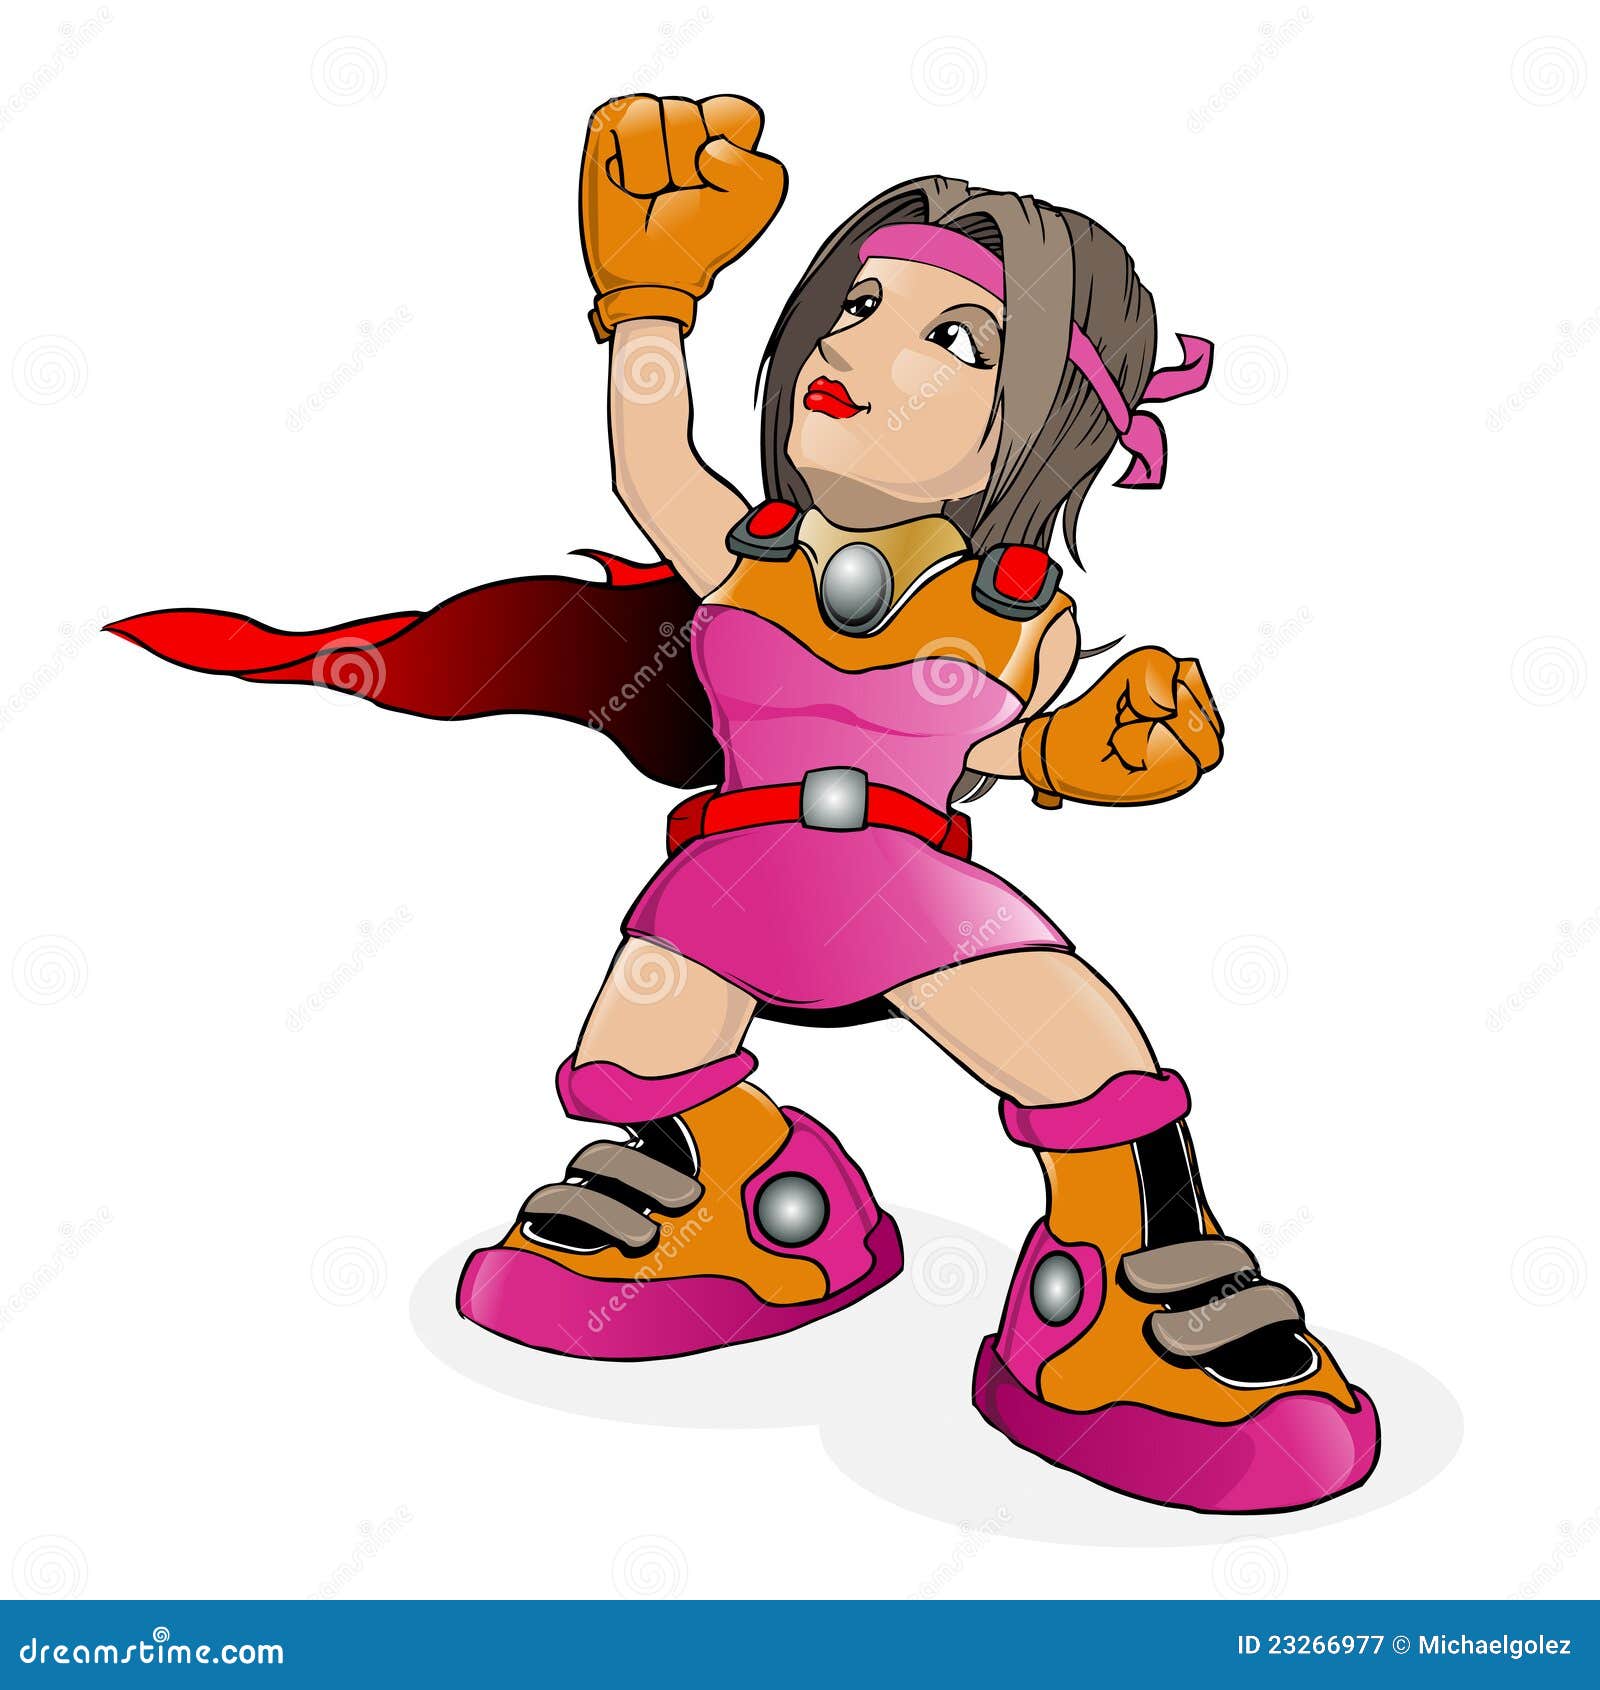 Vetor dos desenhos animados do super-herói. Esta é uma ilustração de um herói super da senhora bonito, desgastando um terno cor-de-rosa, que esteja indo voar.